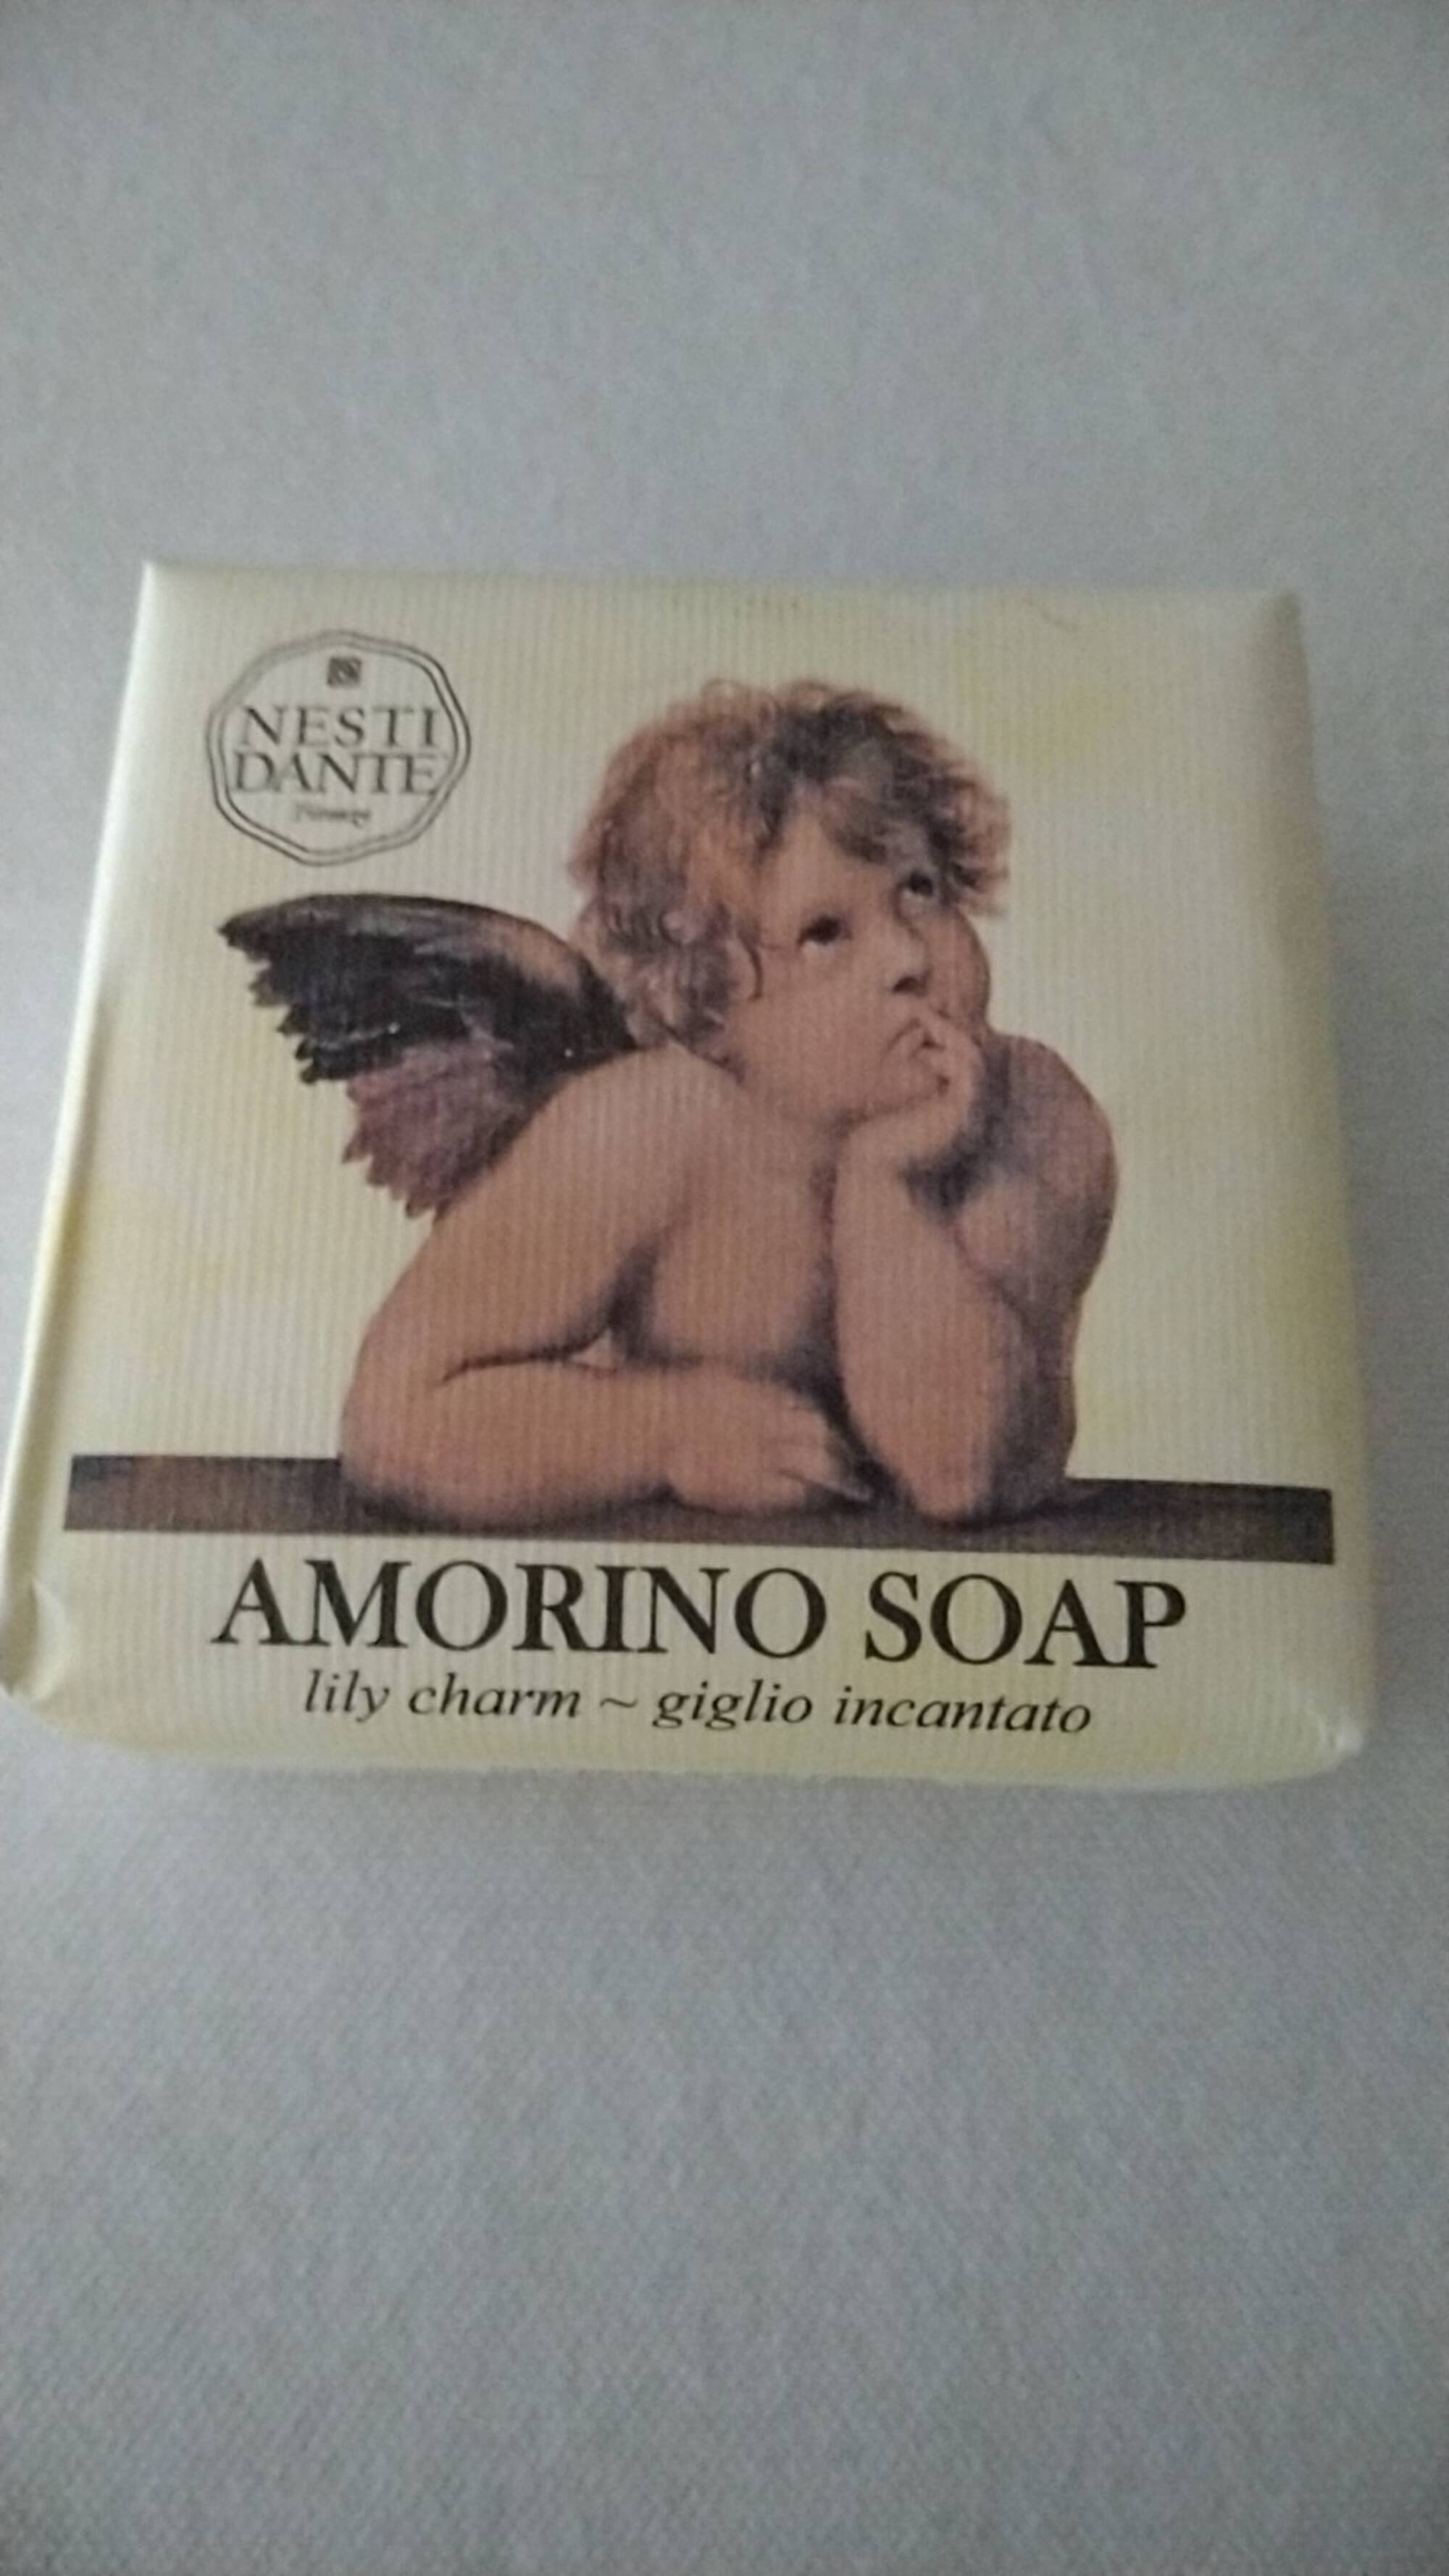 NESTI DANTE - Amorino soap